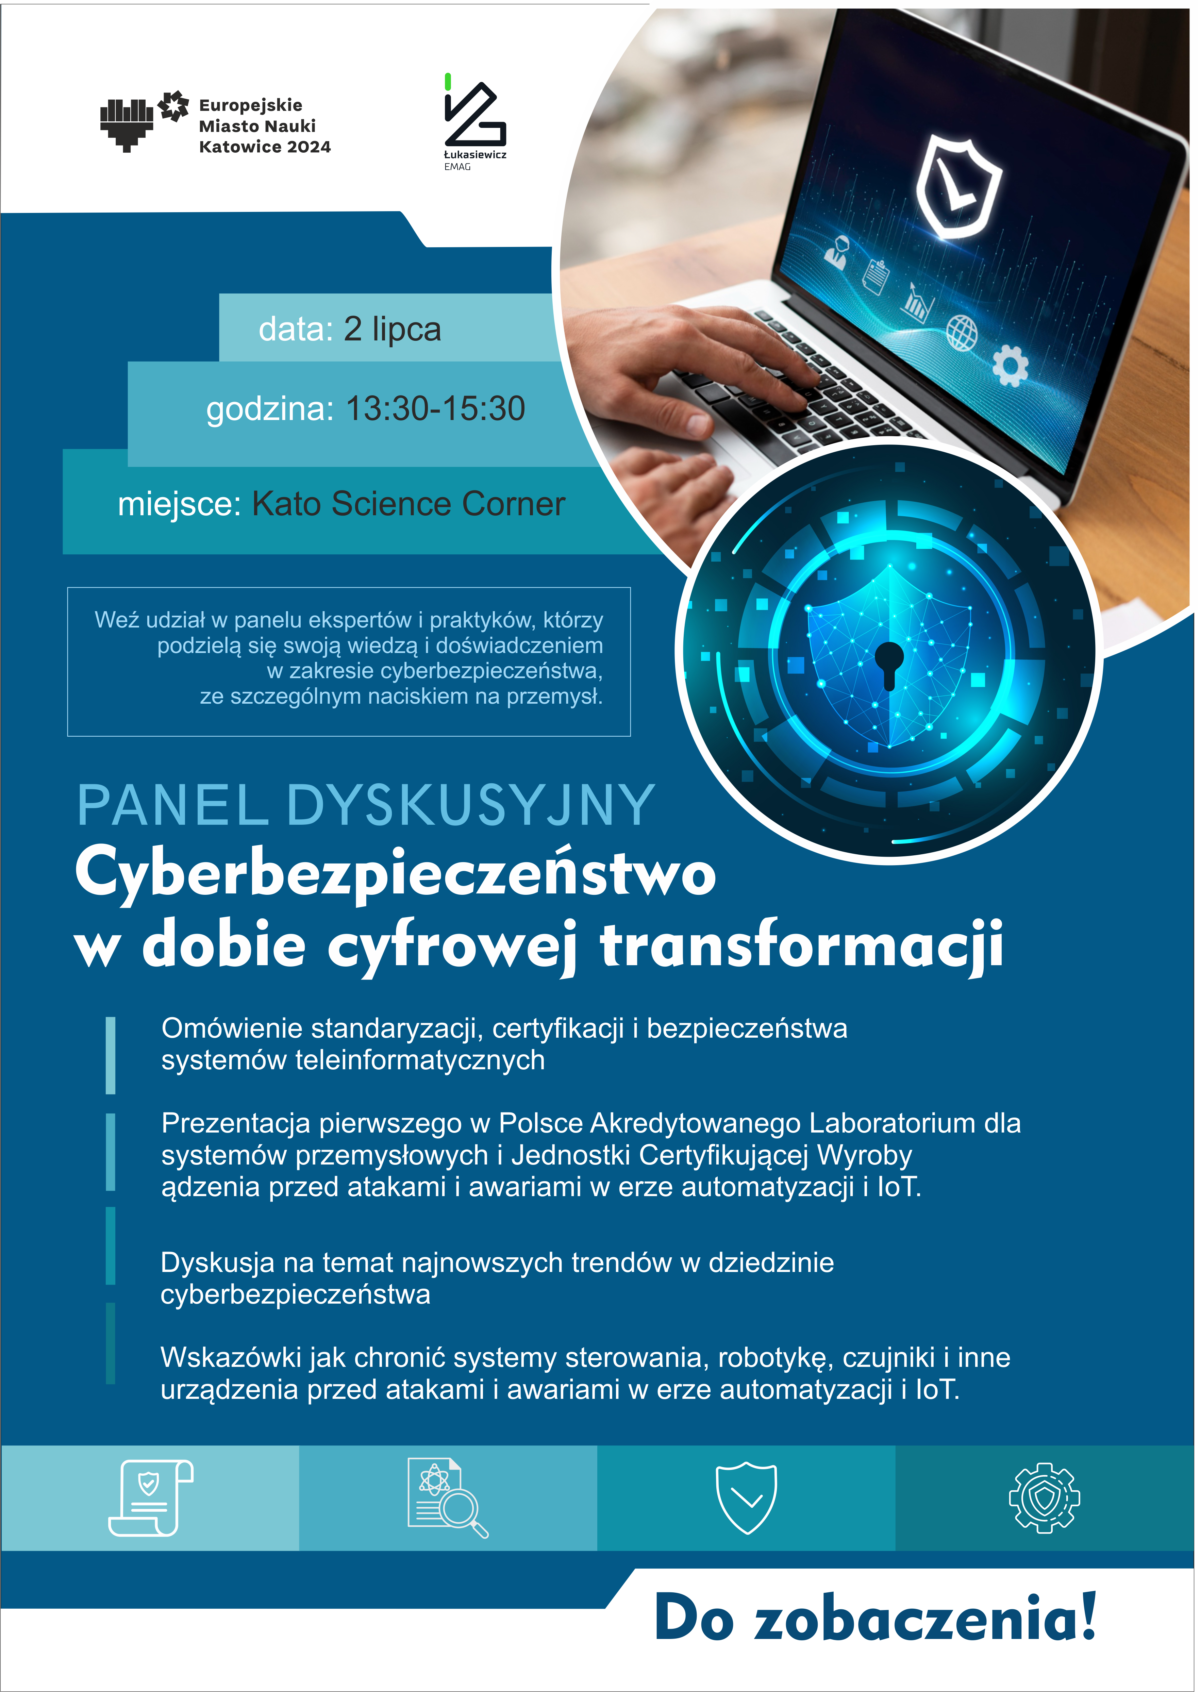 Zapraszamy na panel dyskusyjny „Cyberbezpieczeństwo w dobie cyfrowej transformacji”! 2 lipca 13:00 - 15:00 Kato Science Corner, ul. Młyńska 2, Katowice Omówimy standardy, certyfikacje i bezpieczeństwo systemów teleinformatycznych. Zaprezentowane zostanie pierwsze w Polsce Akredytowane Laboratorium dla systemów przemysłowych i IoT. Do zobaczenia! #Cyberbezpieczeństwo #KatowiceMiastoNauki #IoT #Technologia